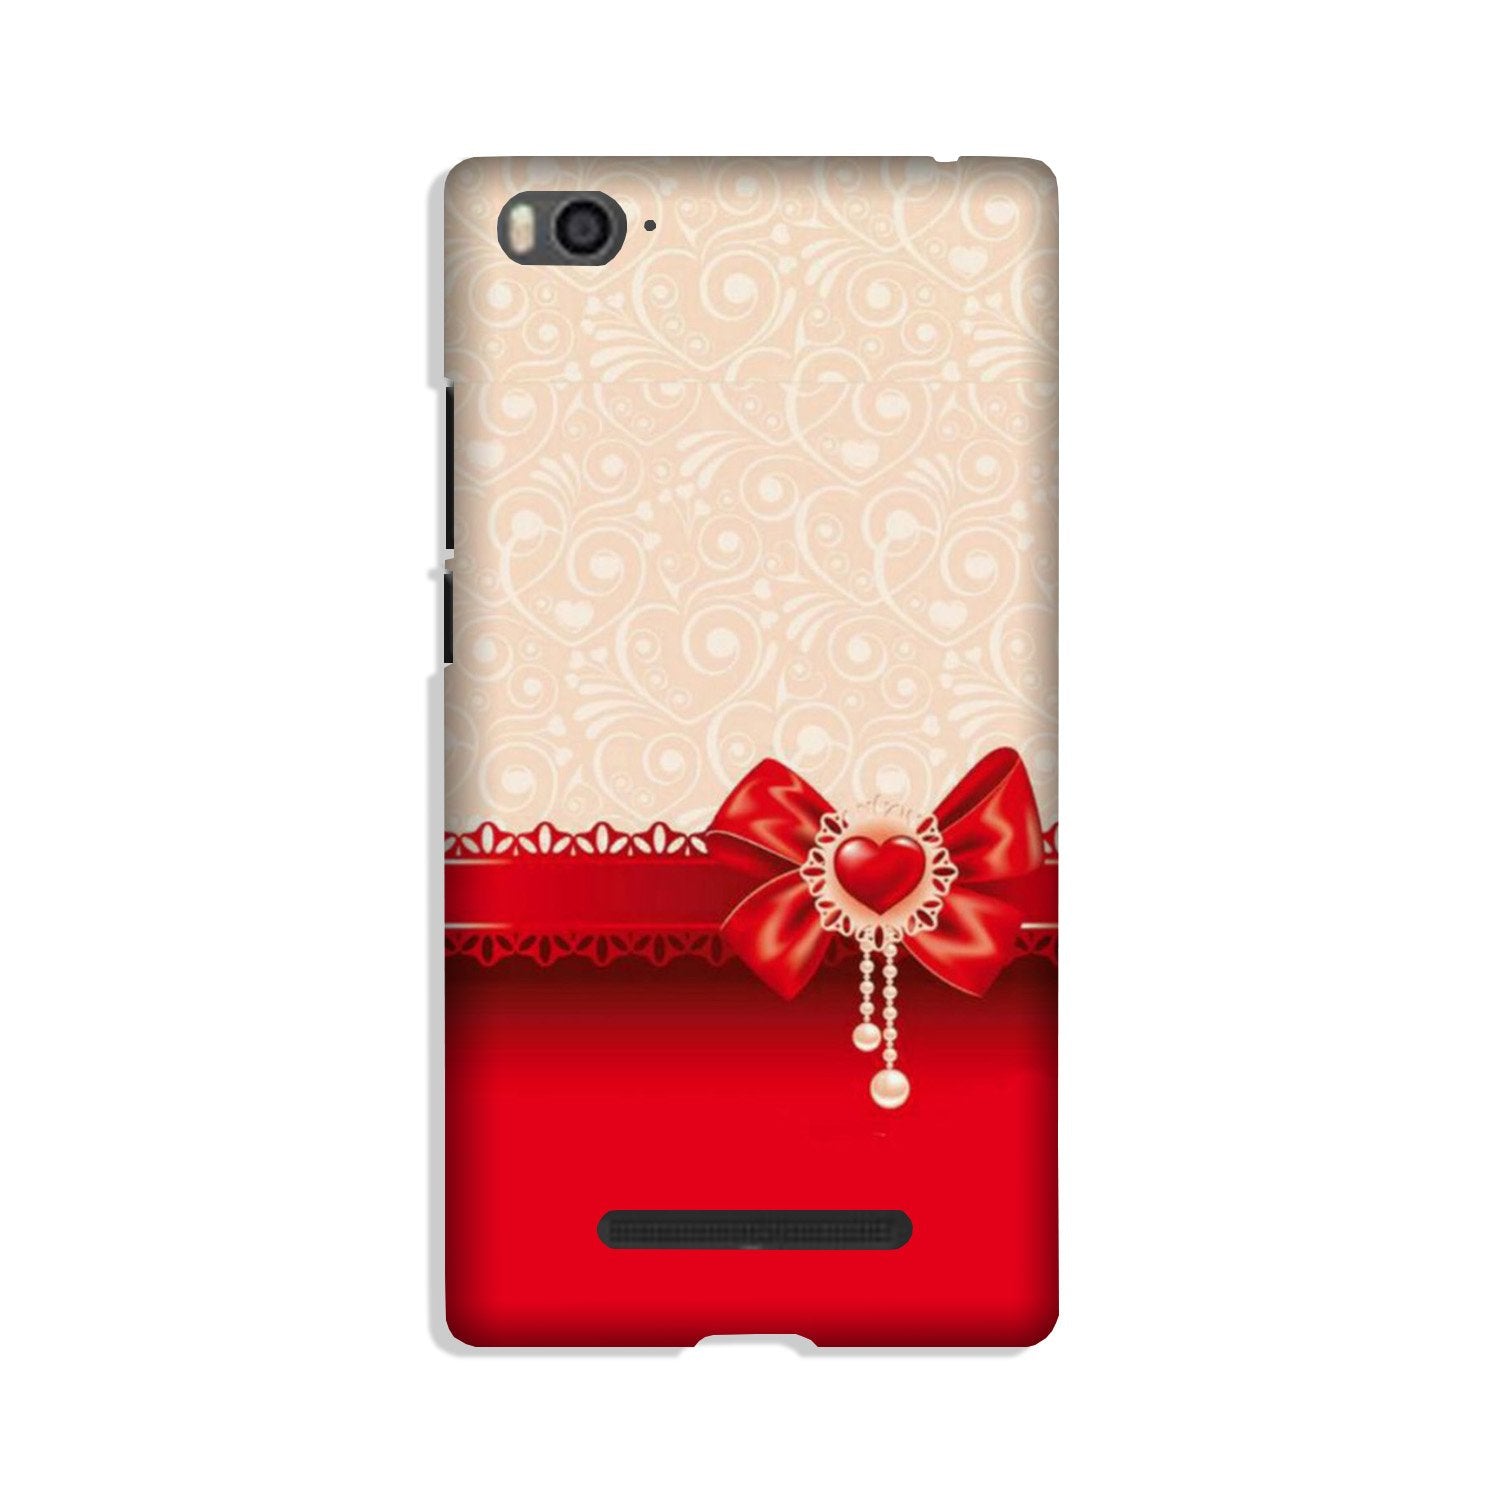 Gift Wrap3 Case for Xiaomi Mi 4i